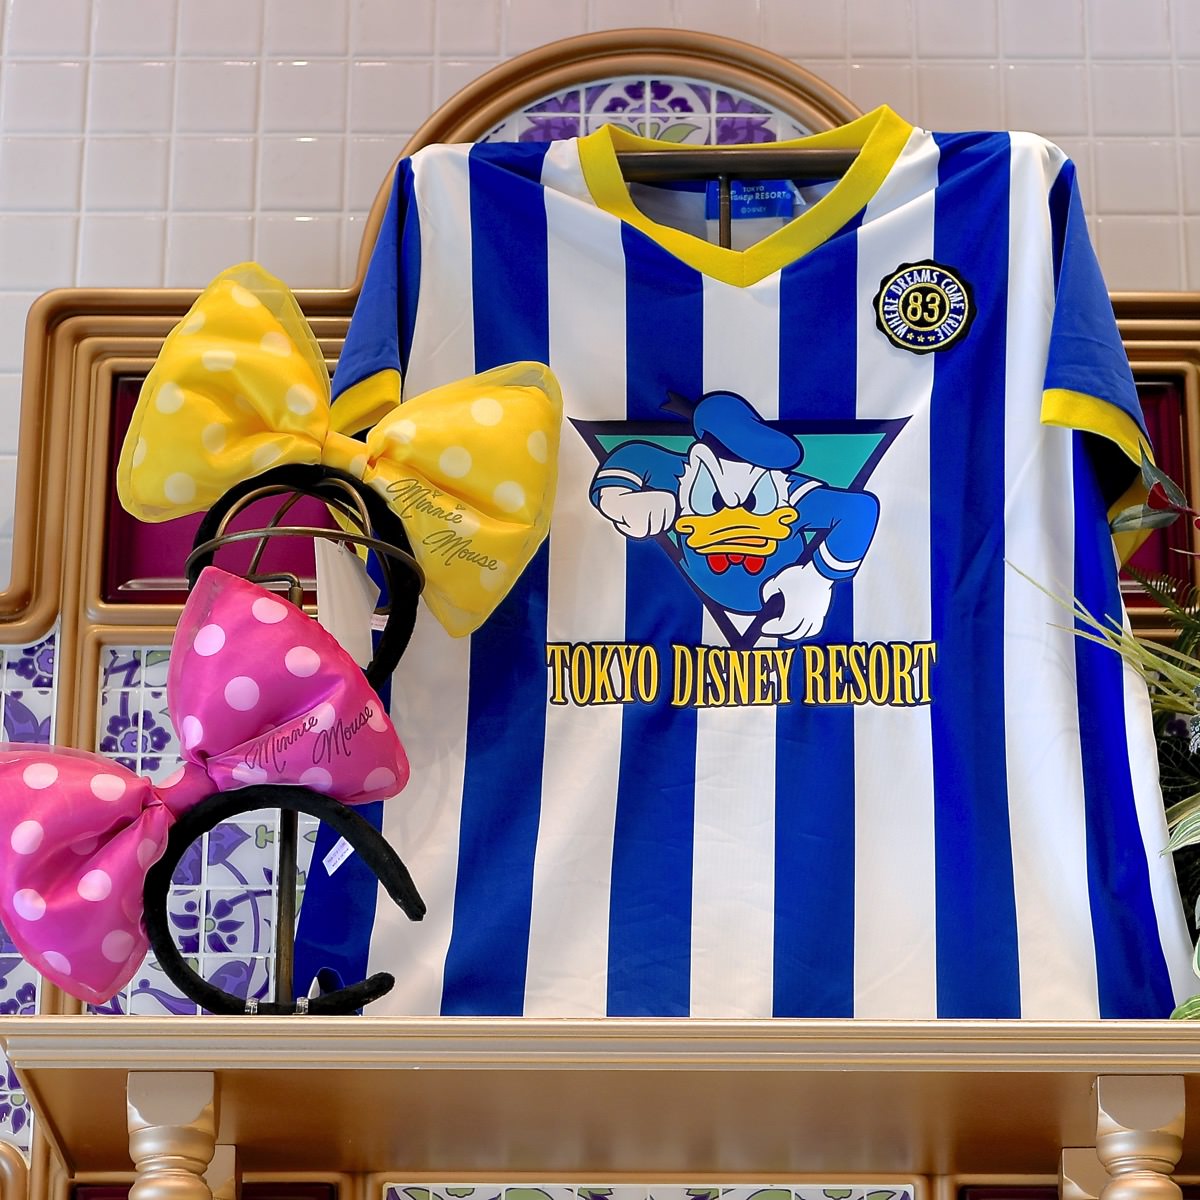 スポーツユニフォーム風で格好いい 東京ディズニーランド キャラクターデザインtシャツ